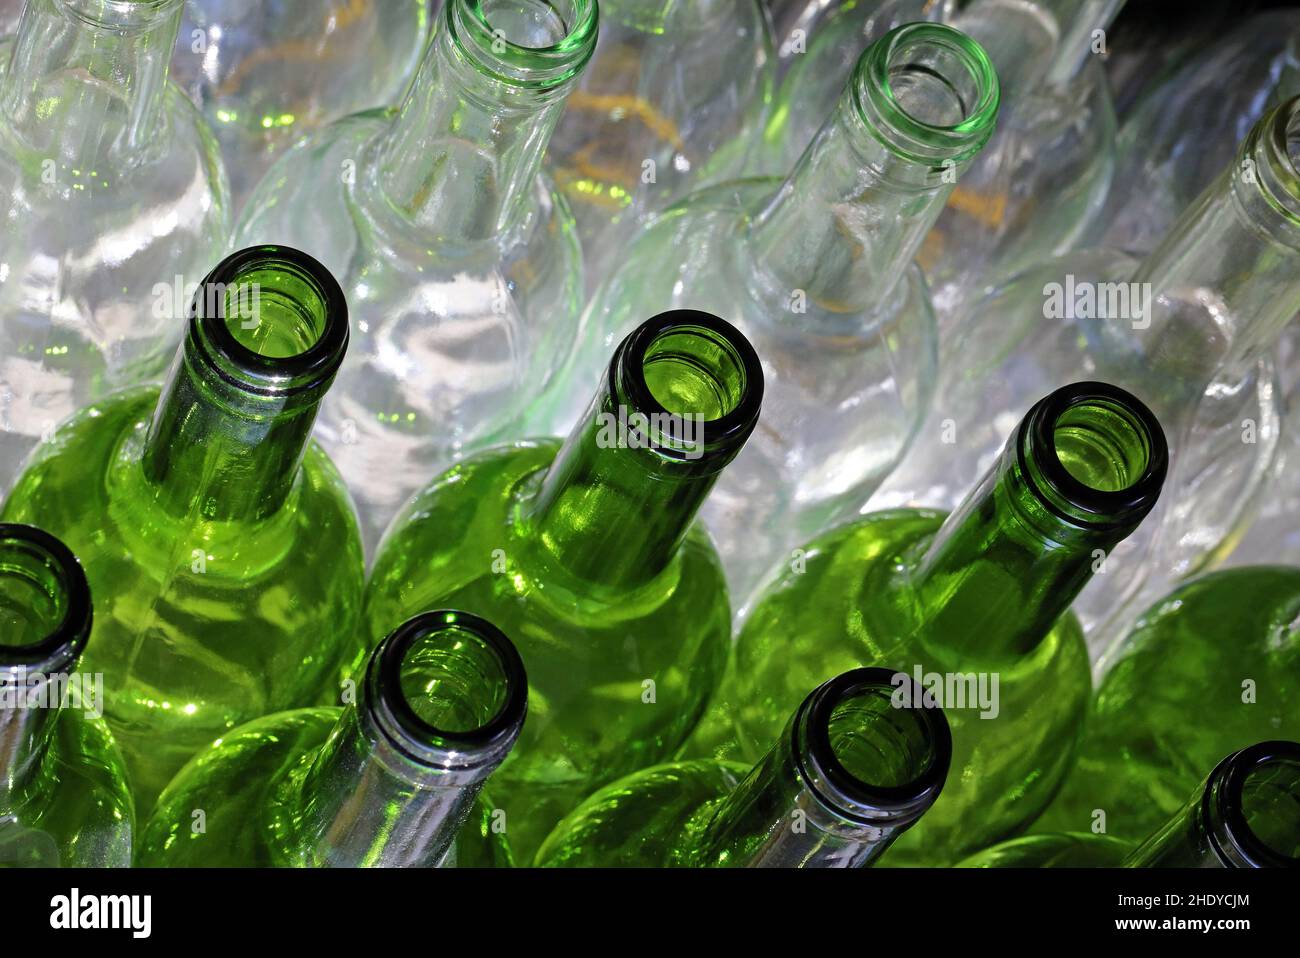 glass bottle, glass bottles, glass ware Stock Photo